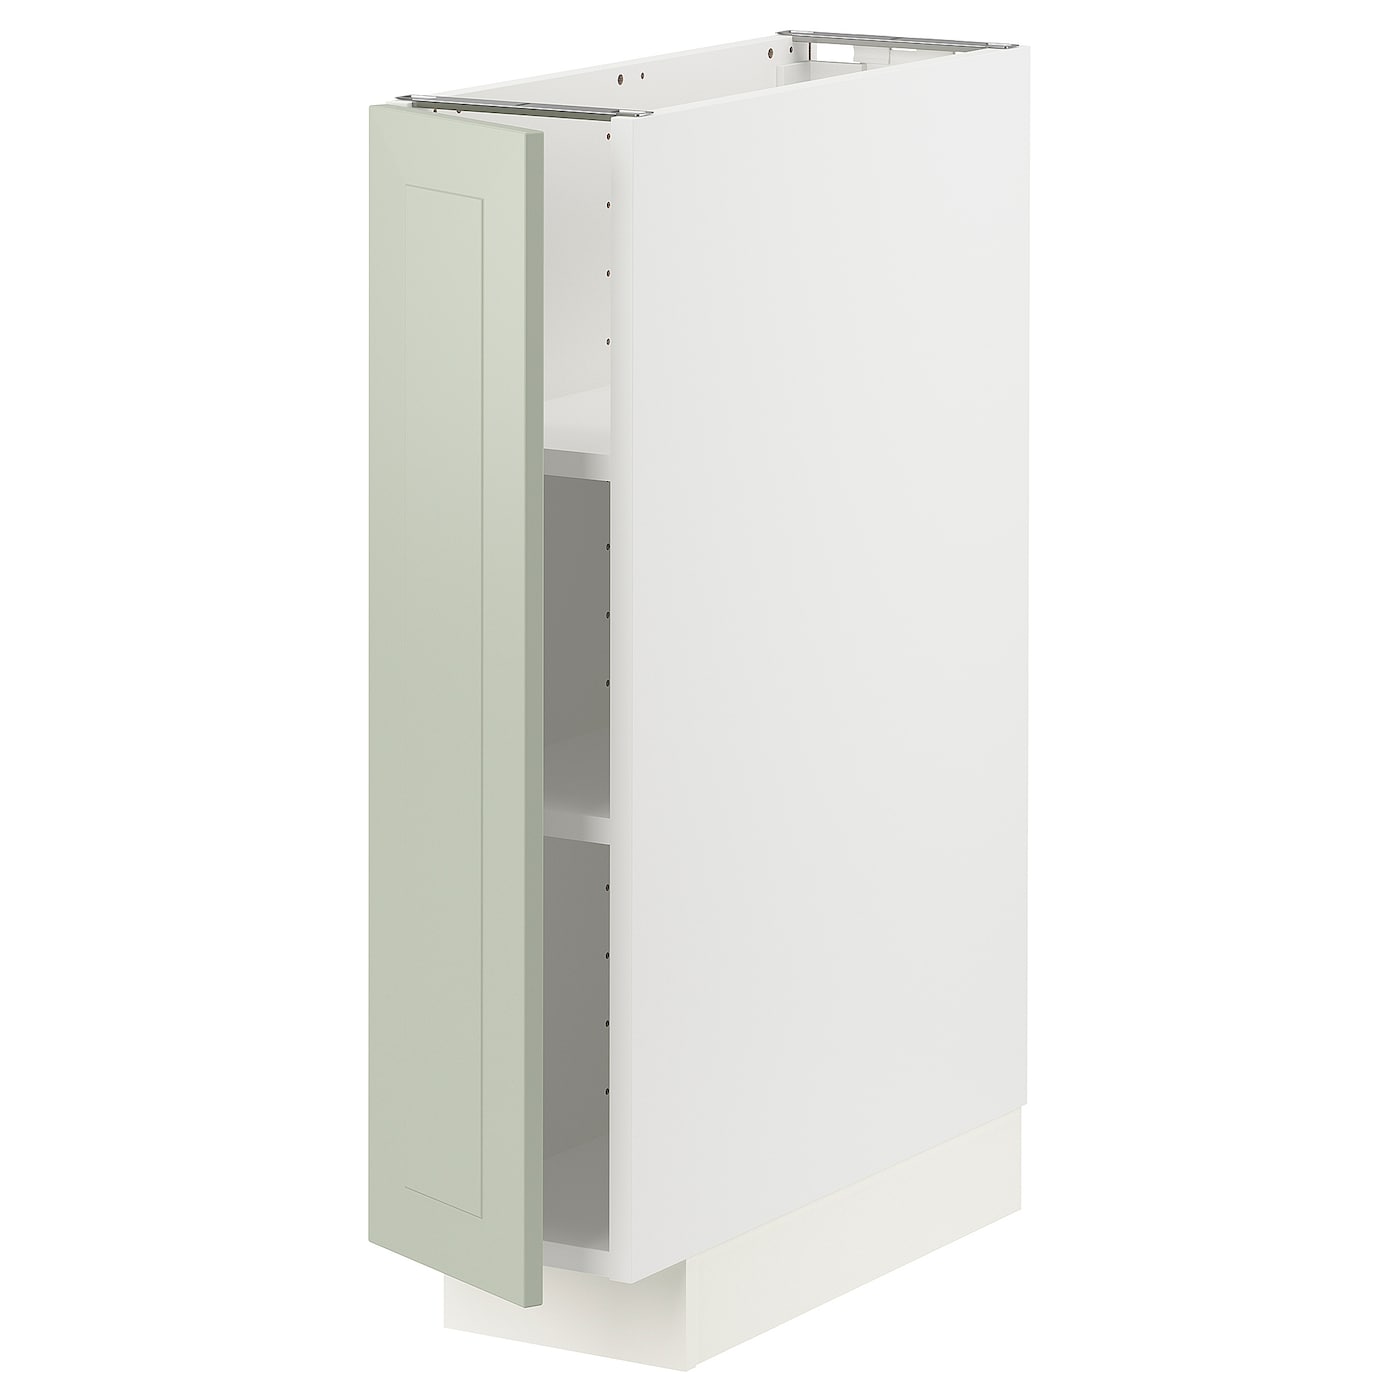 Напольный шкаф  - IKEA METOD, 88x62x20см, белый/светло-зеленый, МЕТОД ИКЕА